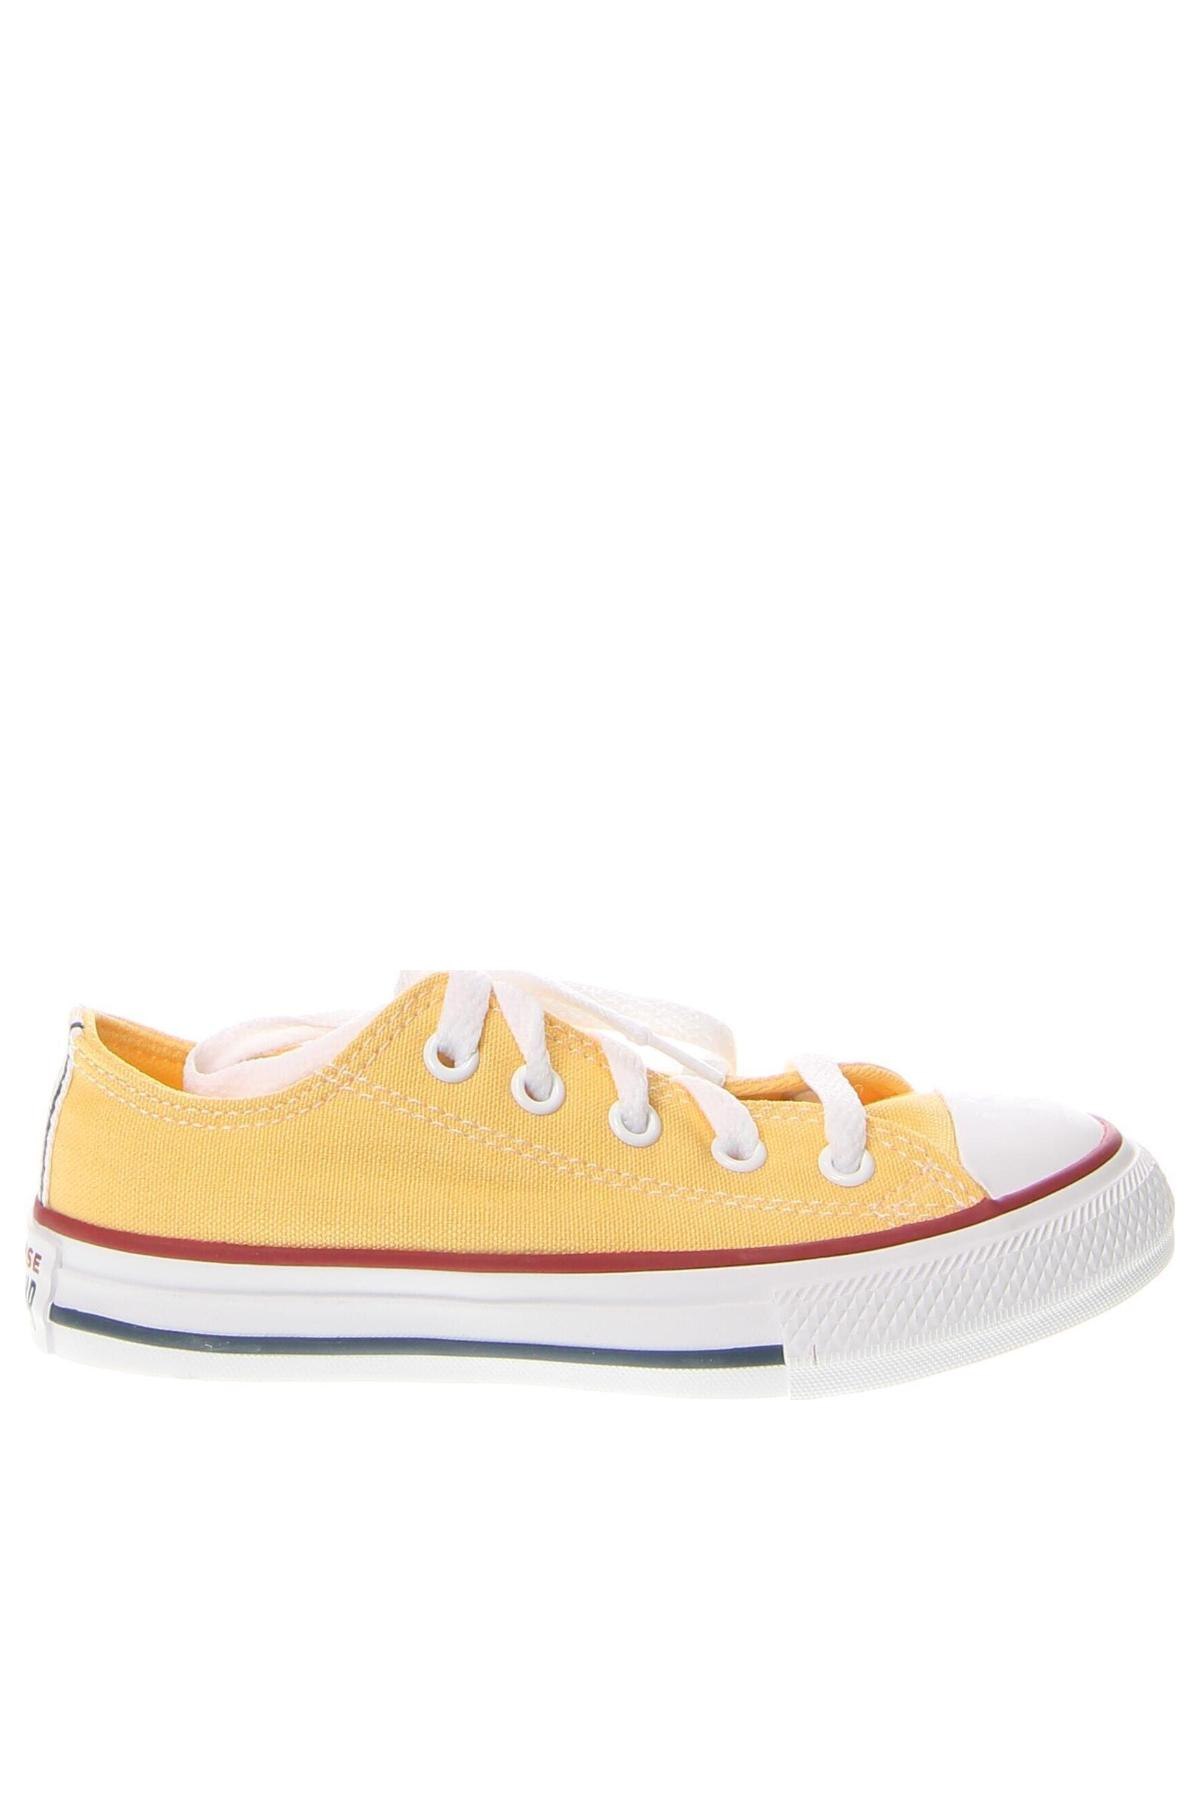 Παιδικά παπούτσια Converse, Μέγεθος 28, Χρώμα Κίτρινο, Τιμή 29,90 €